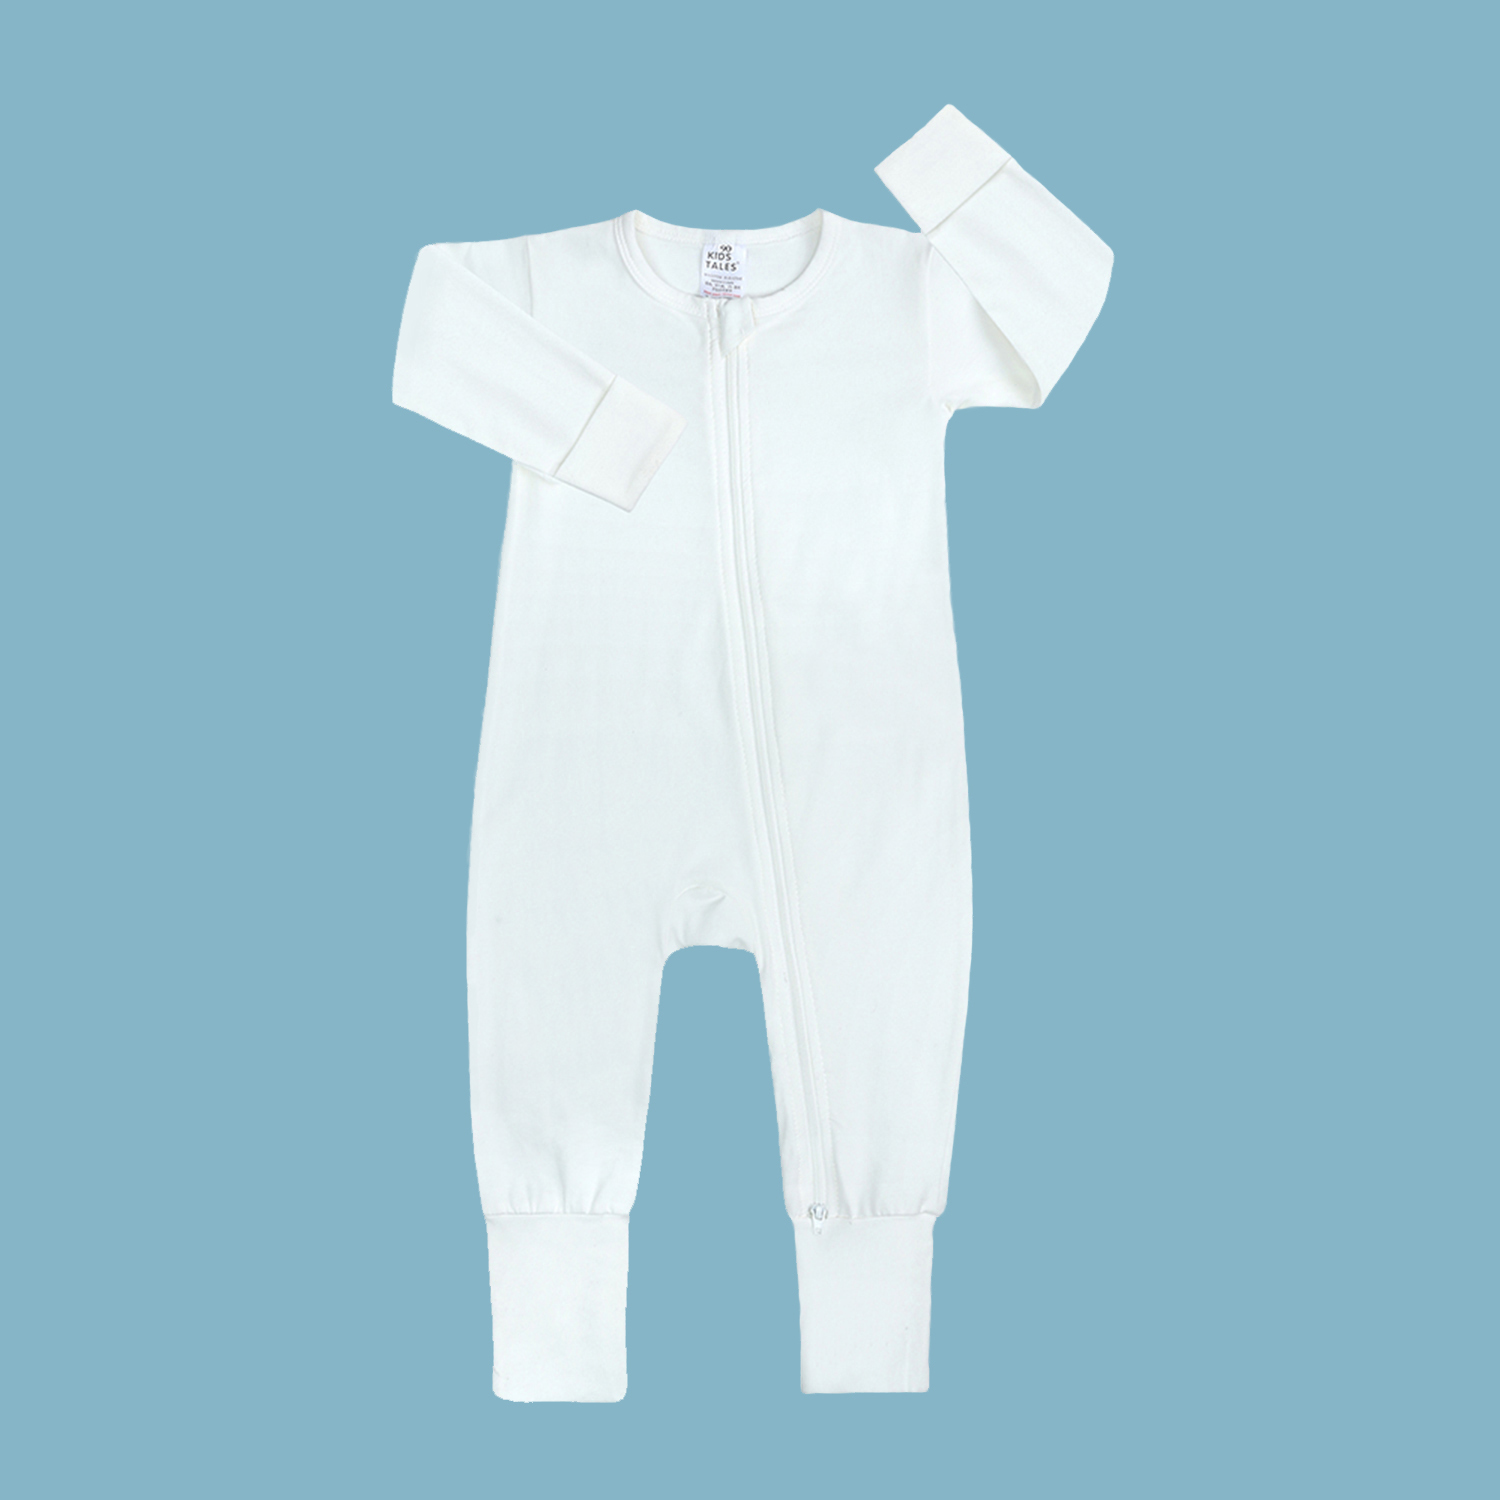 Kids Tales - Best baby romper white 12-18m cotton double zipper infant bodysuit unisex pajama